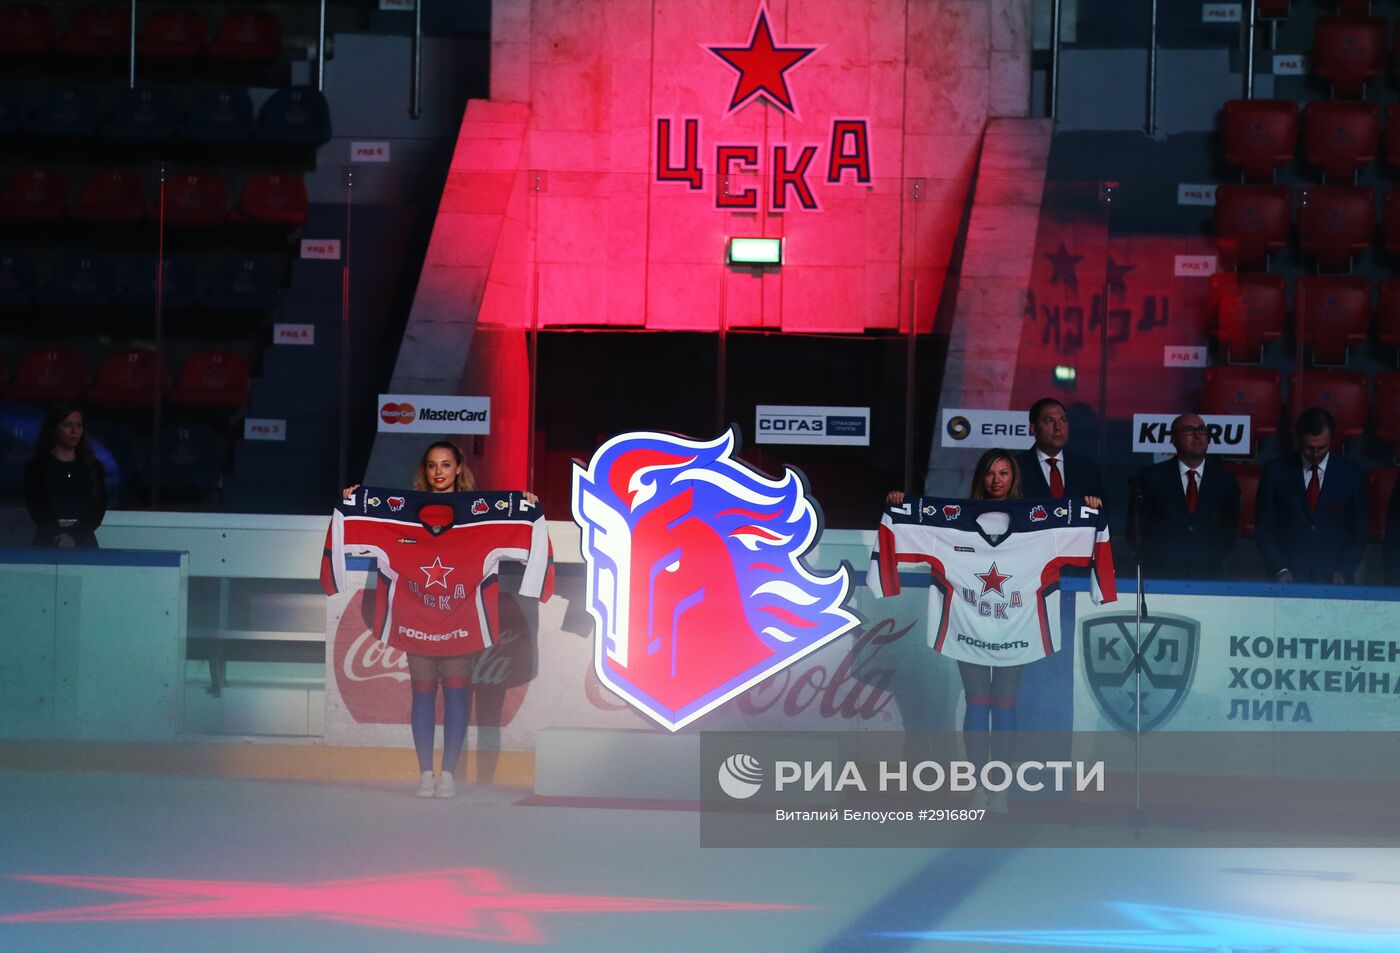 Хоккей. Презентация ПХК ЦСКА сезона 2016/17